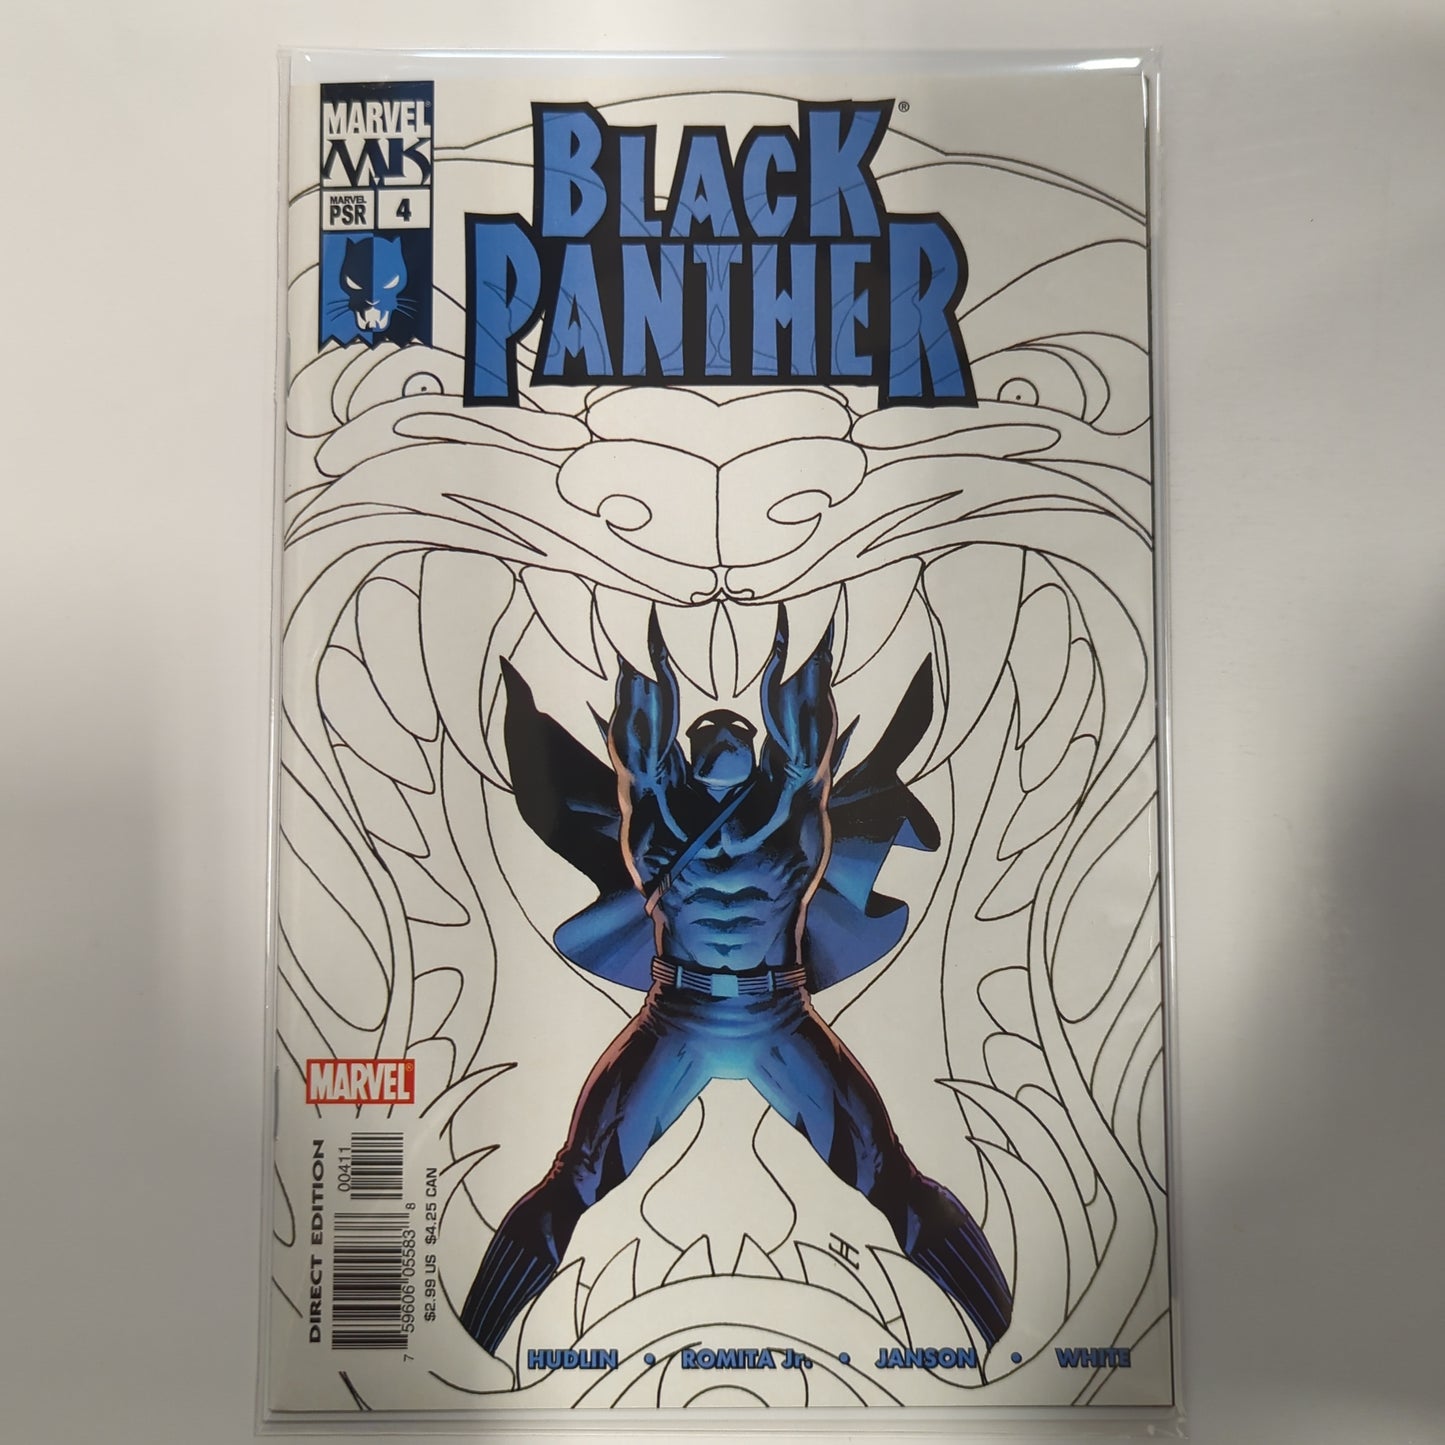 Black Panther #4